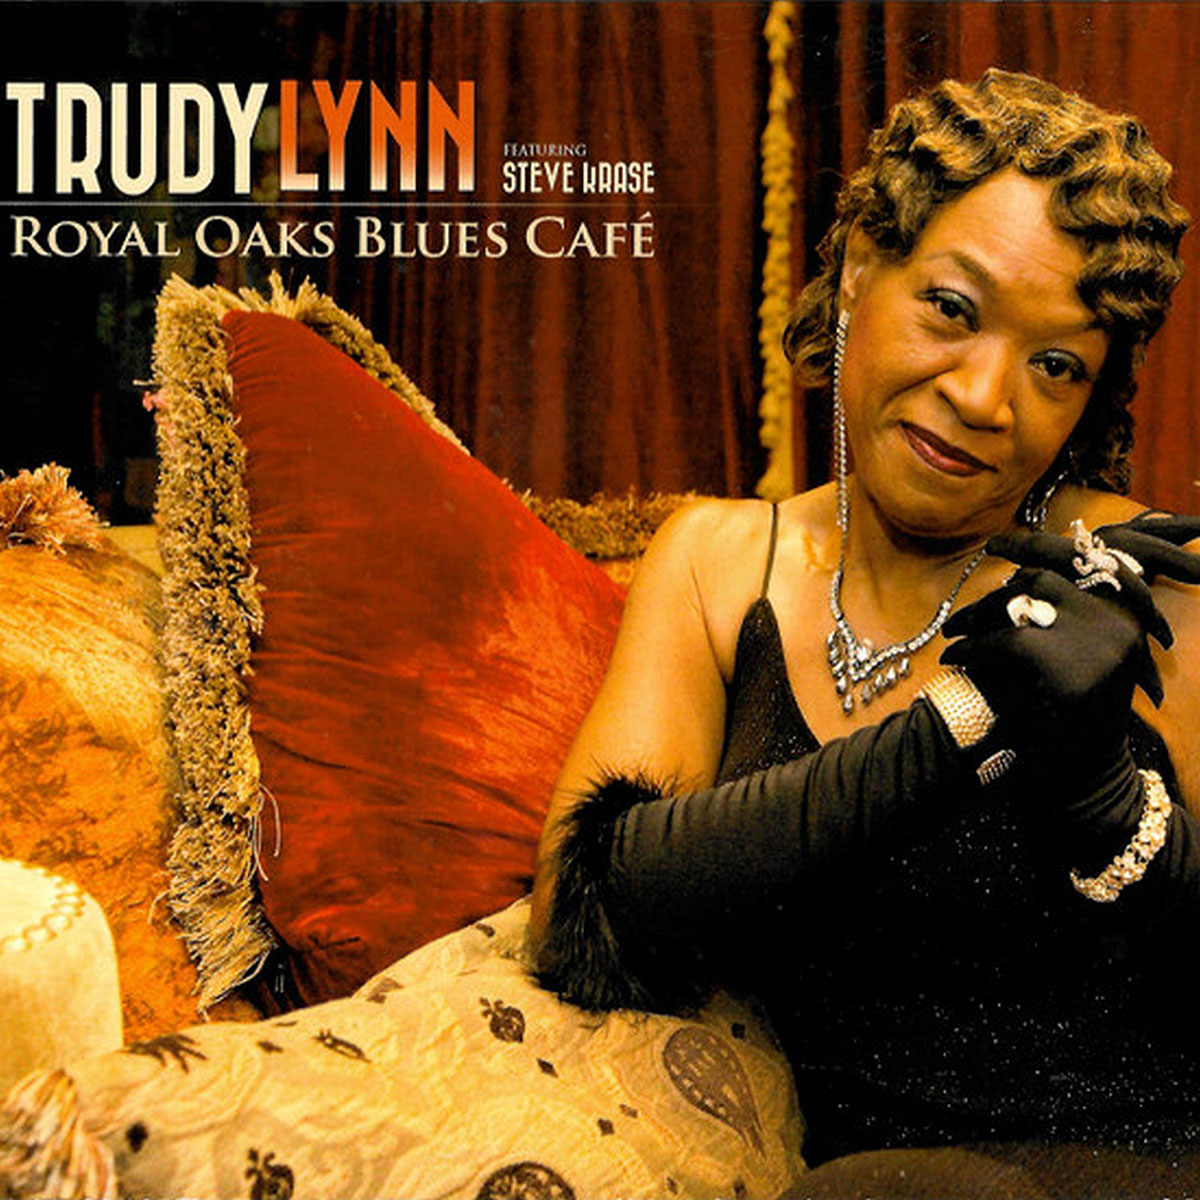 Royal Oaks Blues Cafe